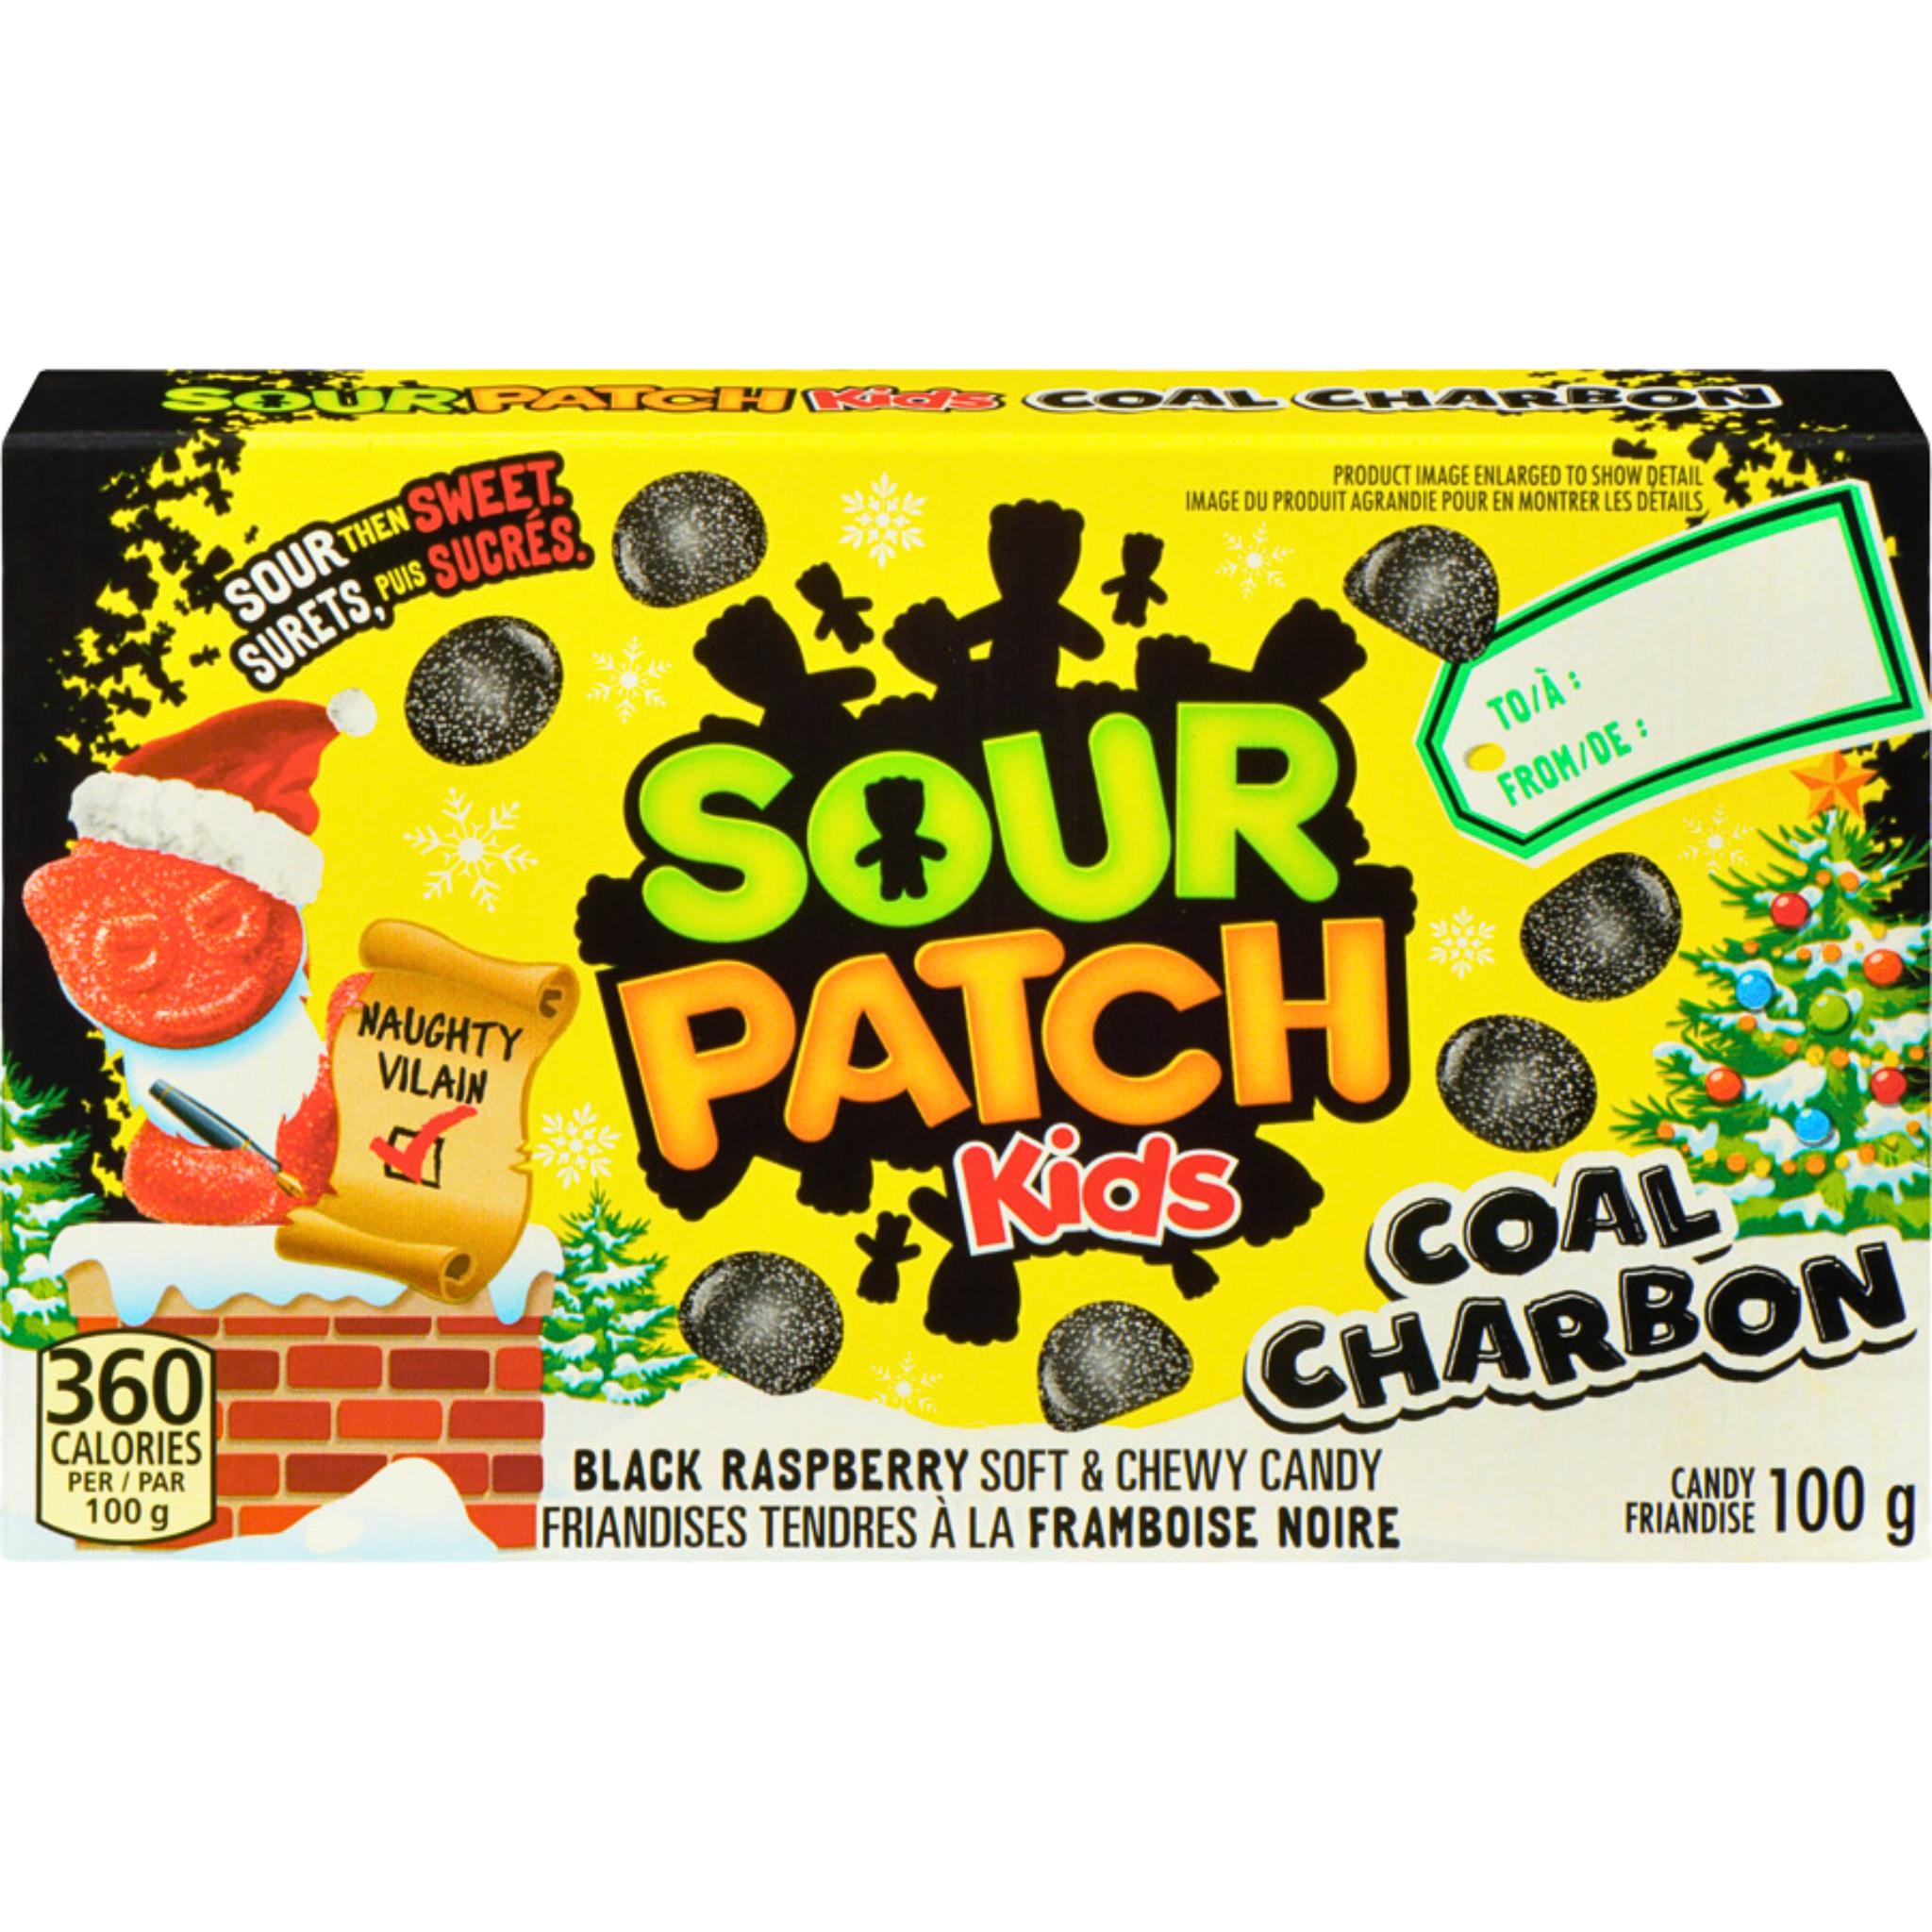 Sour Patch Kids Coal Charbon - 100g